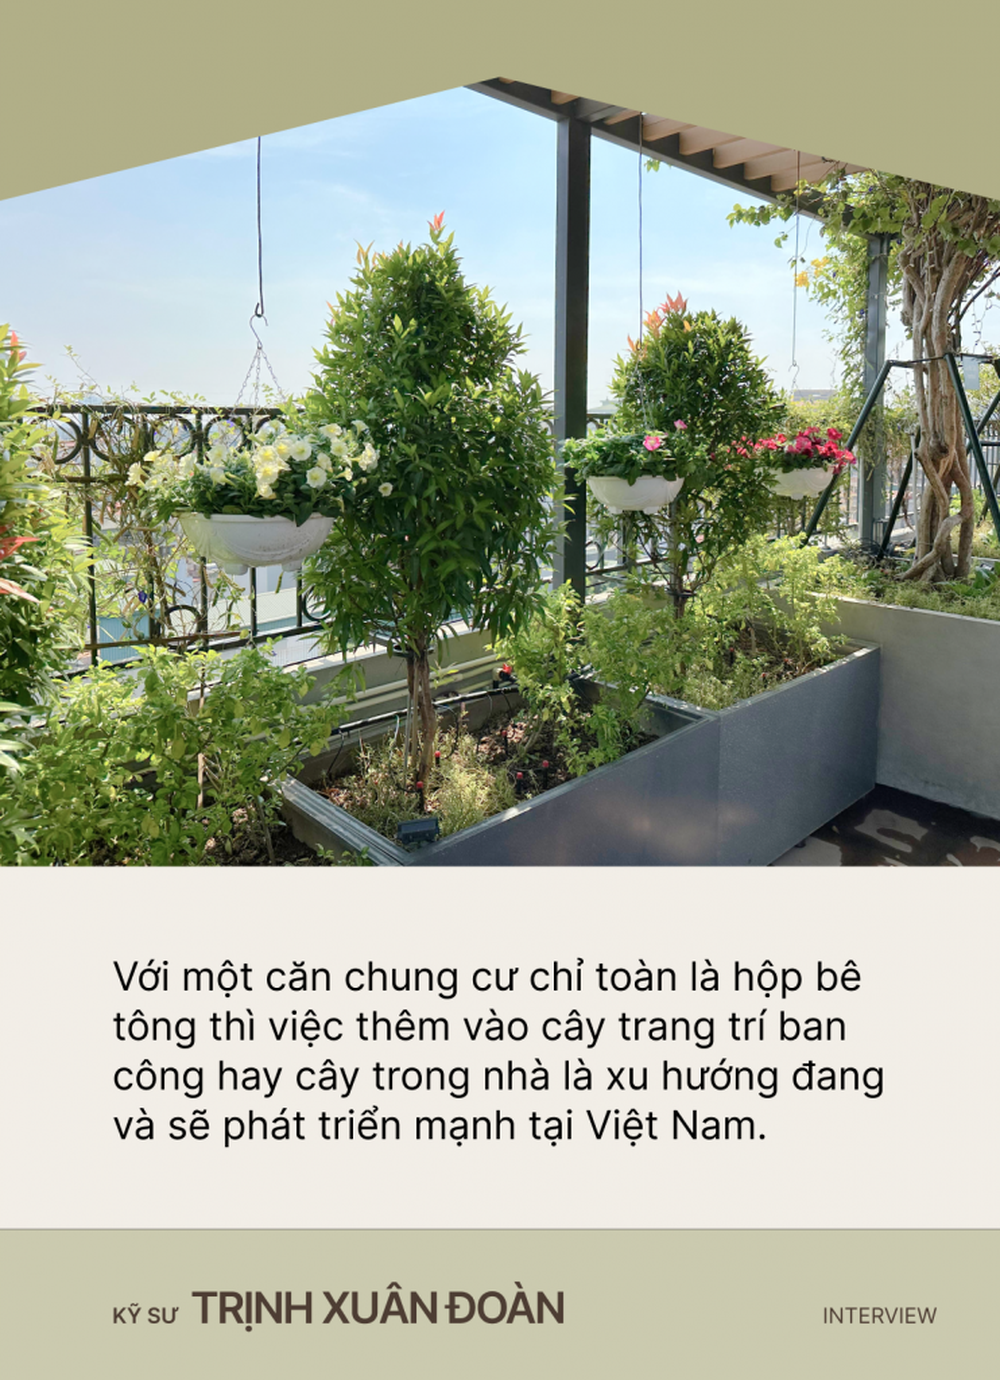 Kỹ sư thiết kế sân vườn Trịnh Xuân Đoàn: Từng mảng cỏ, bụi cây góp phần xanh hóa những tảng bê tông đô thị, giúp con người tìm về với thiên nhiên - Ảnh 2.